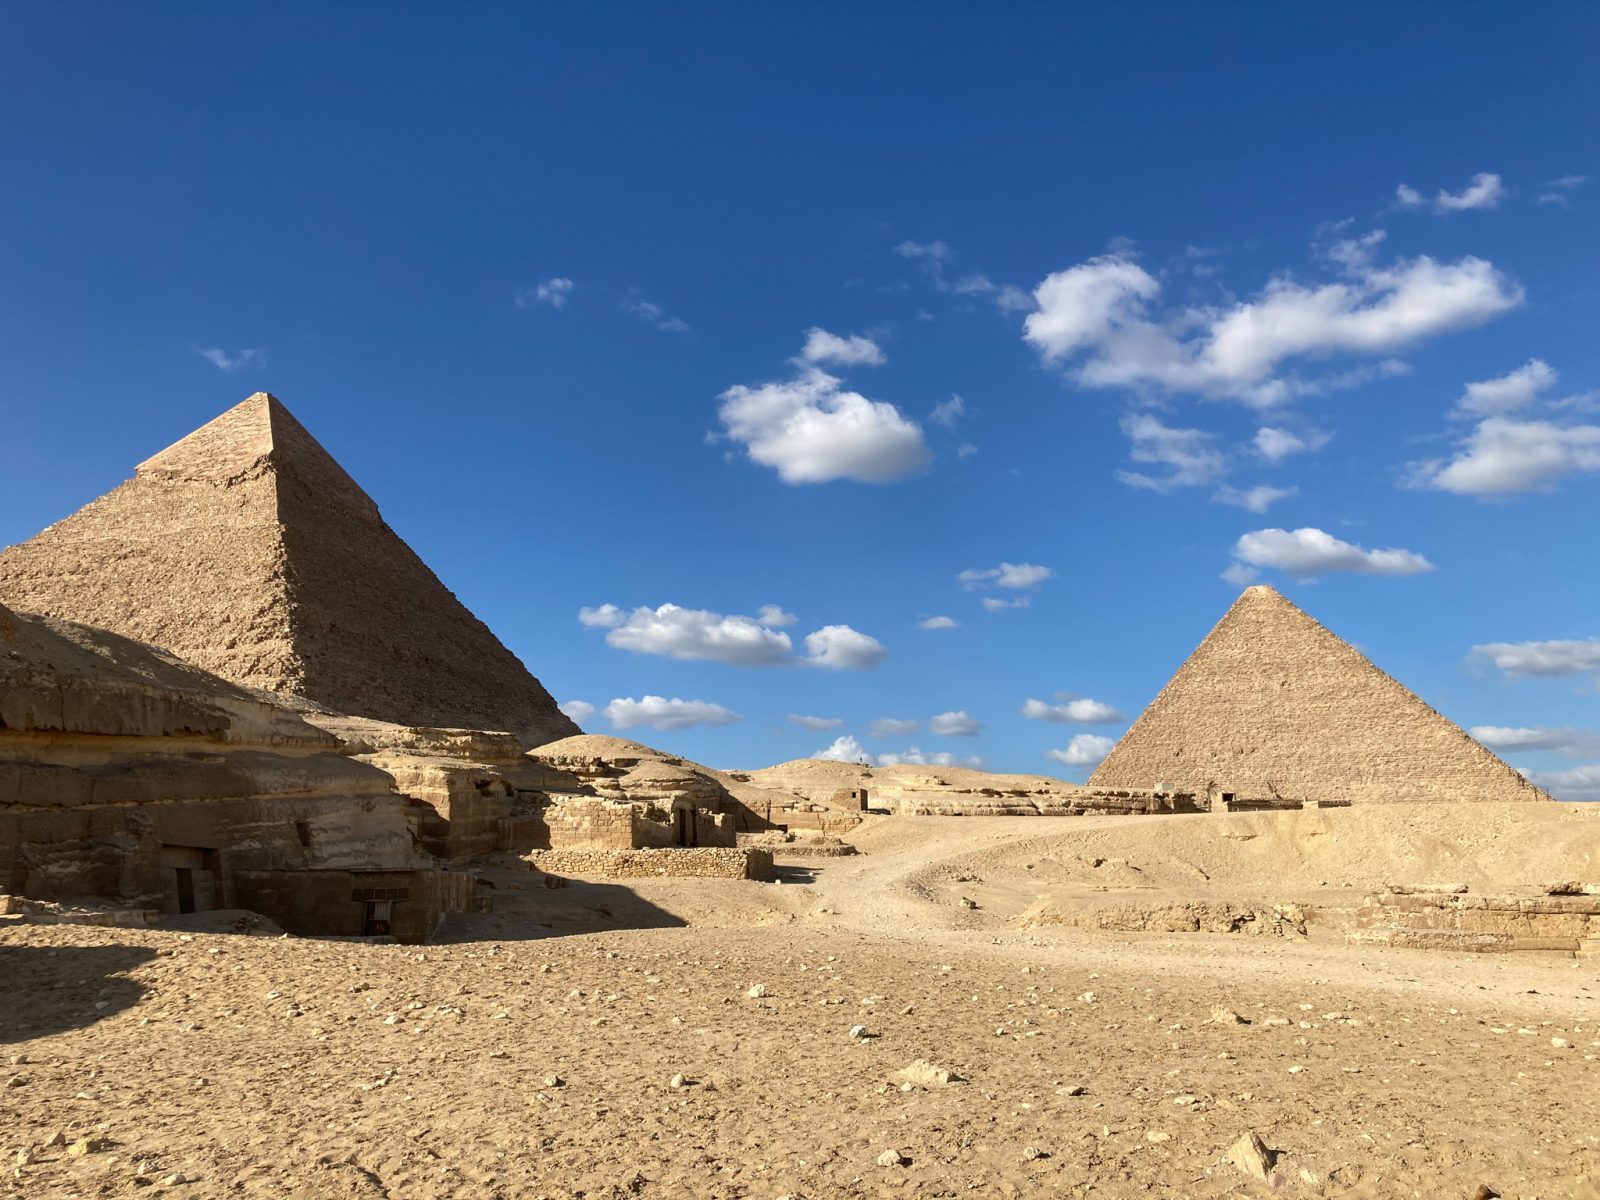 Kilka słów o piramidach: tych egipskich i tych europejskich